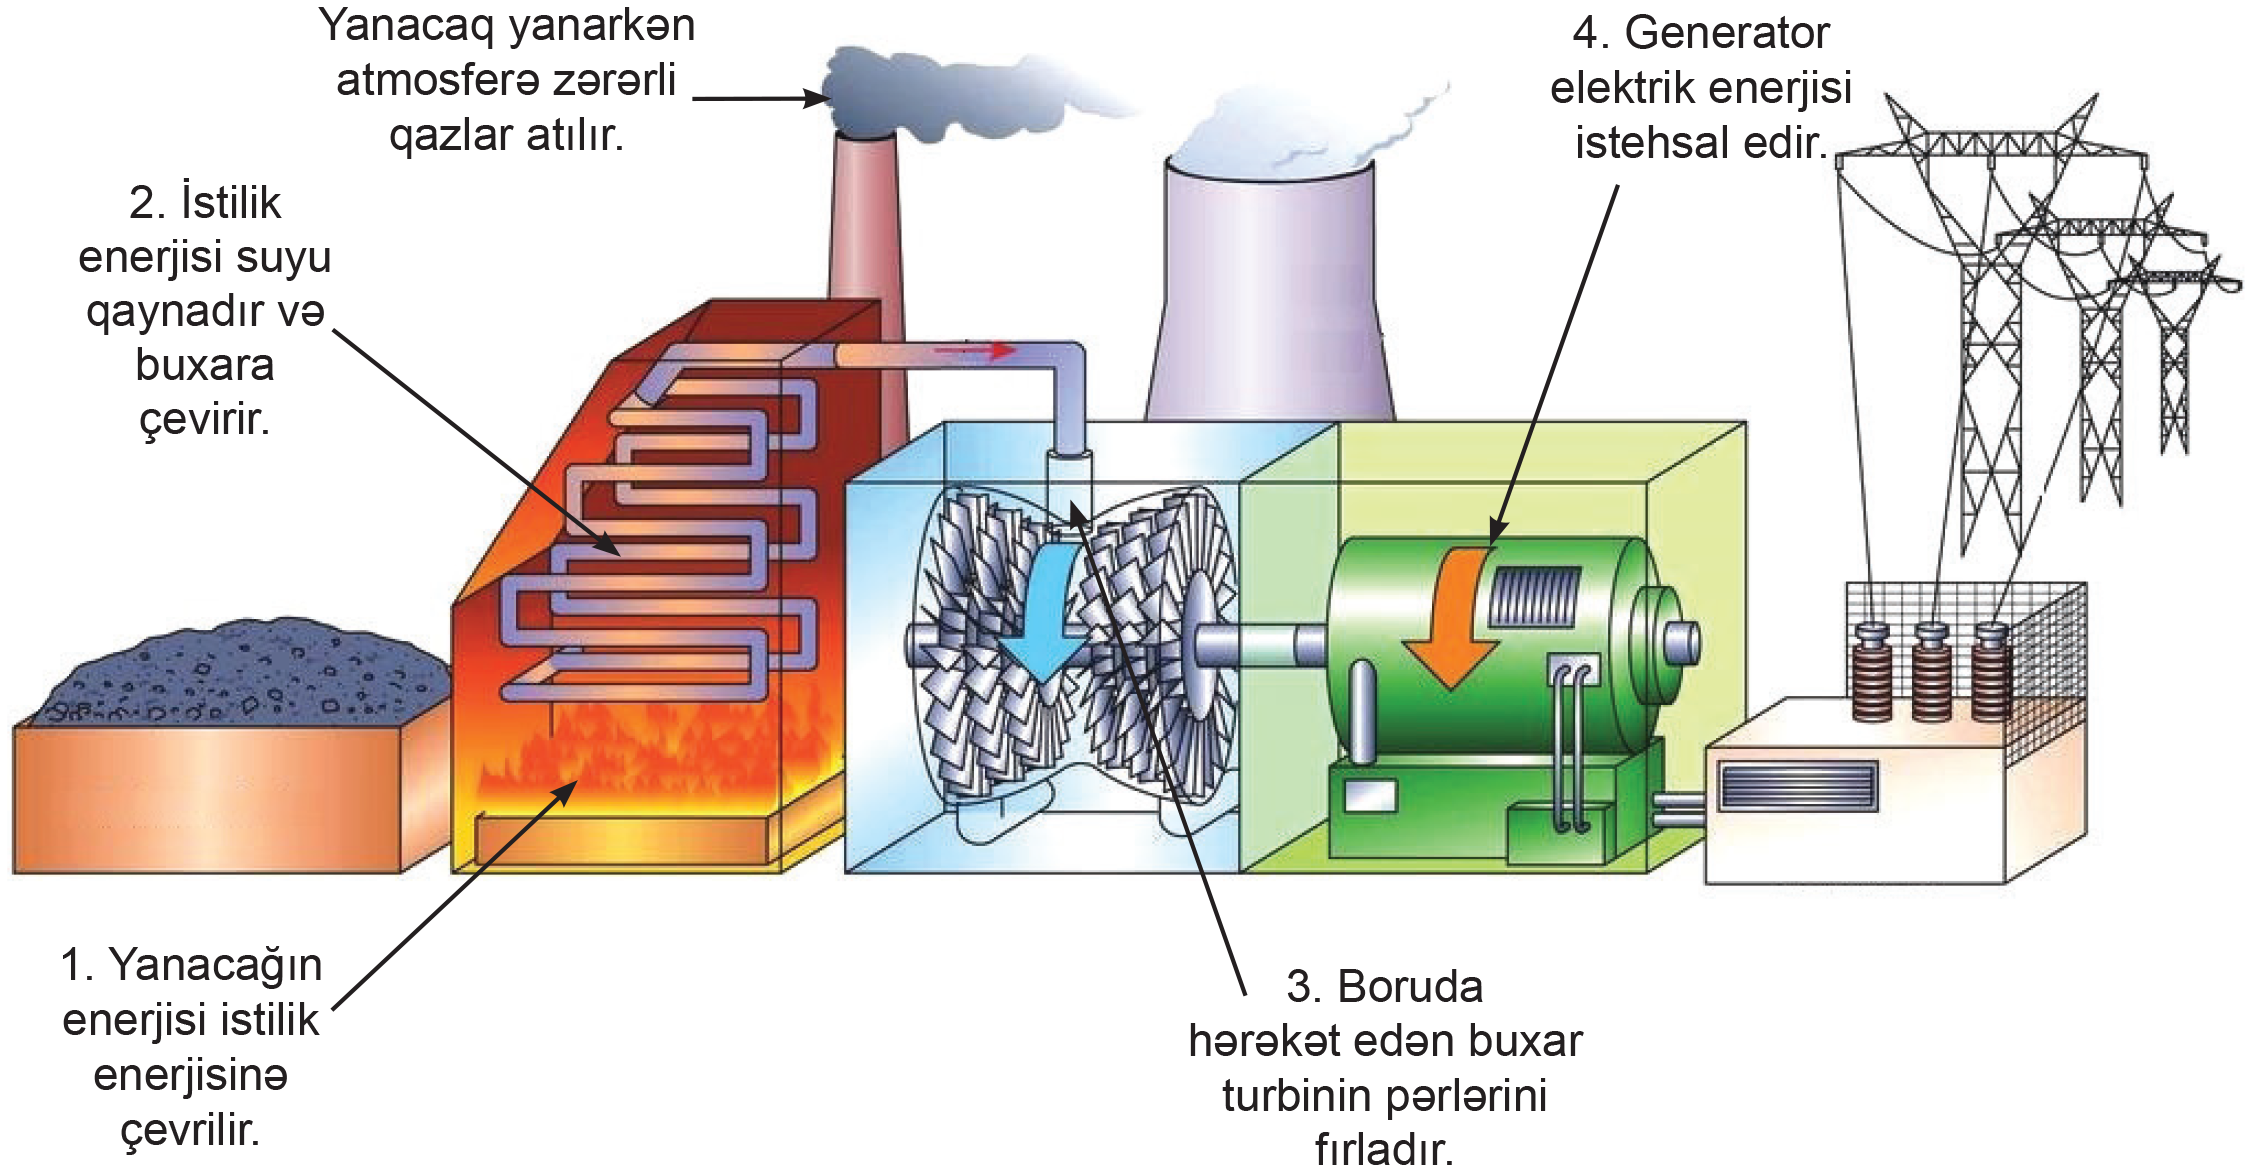 Электростанция за счет сжигания газа мазута угля. Принцип работы тепловых электростанций схема. Тепловые электростанции ТЭС принцип работы. Тепловая электростанция ТЭС схема. Как работает тепловая электростанция схема.